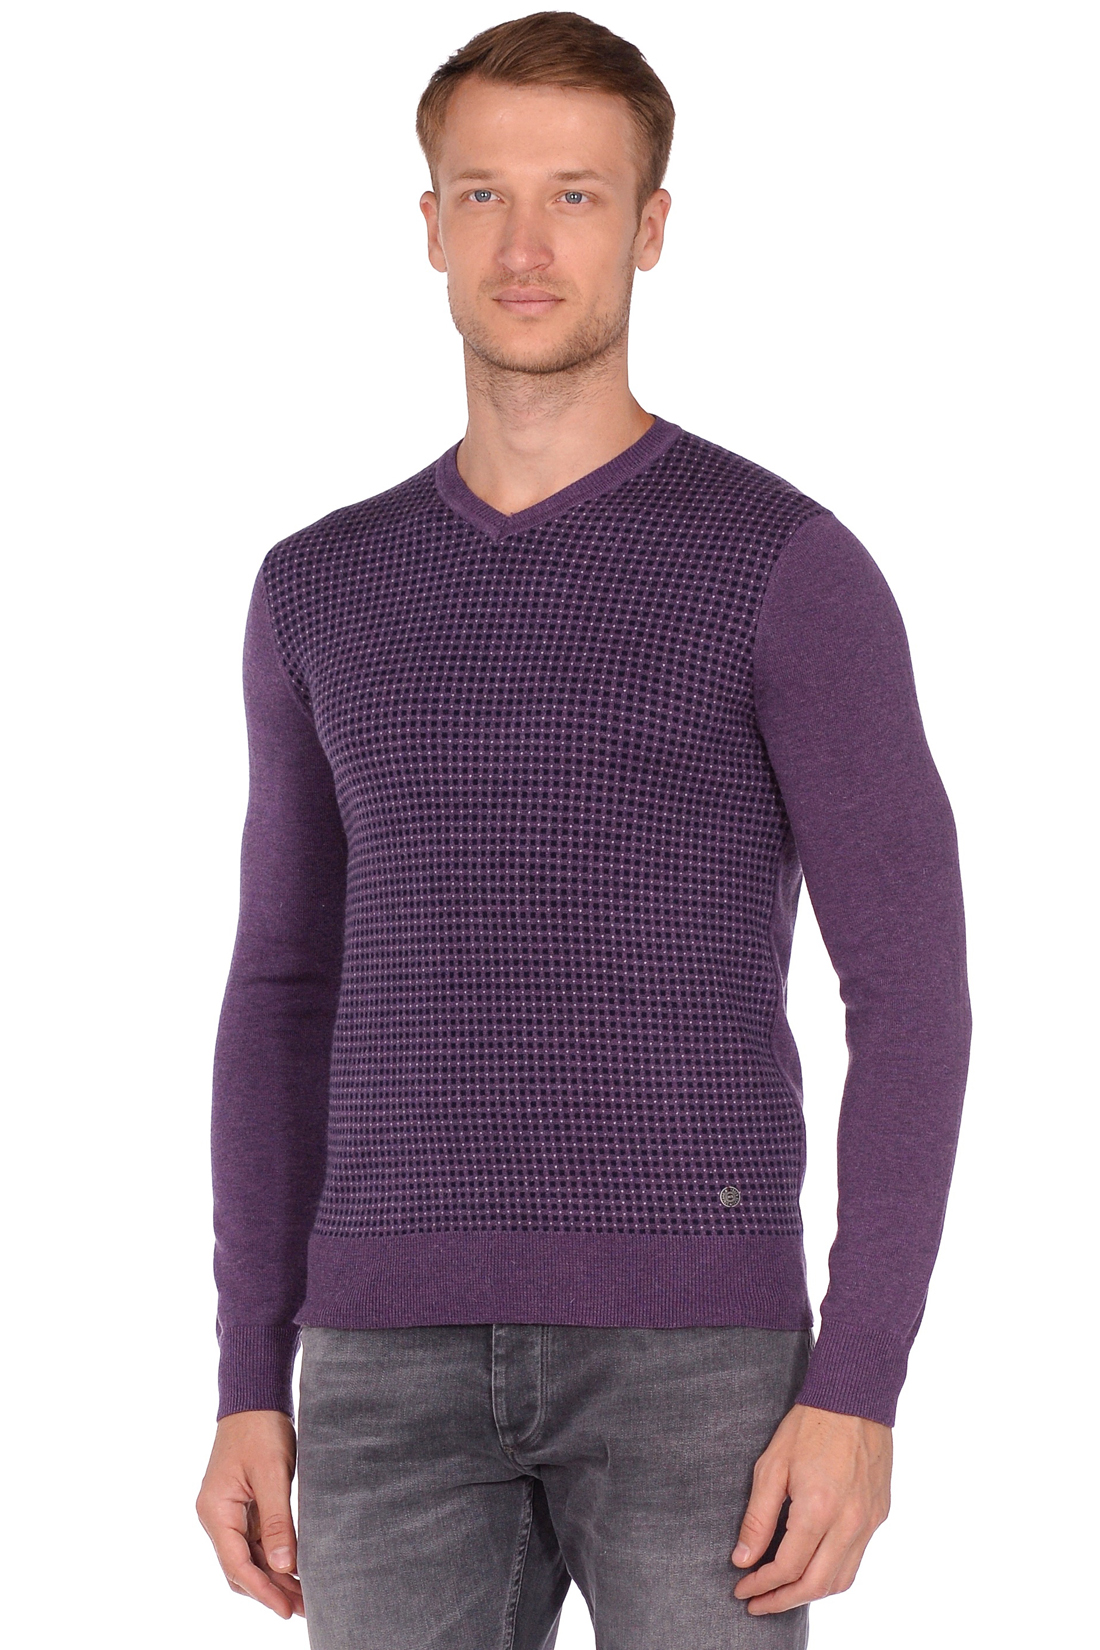 Пуловер с мелким узором в клетку (арт. baon B638503), размер XL, цвет фиолетовый Пуловер с мелким узором в клетку (арт. baon B638503) - фото 1